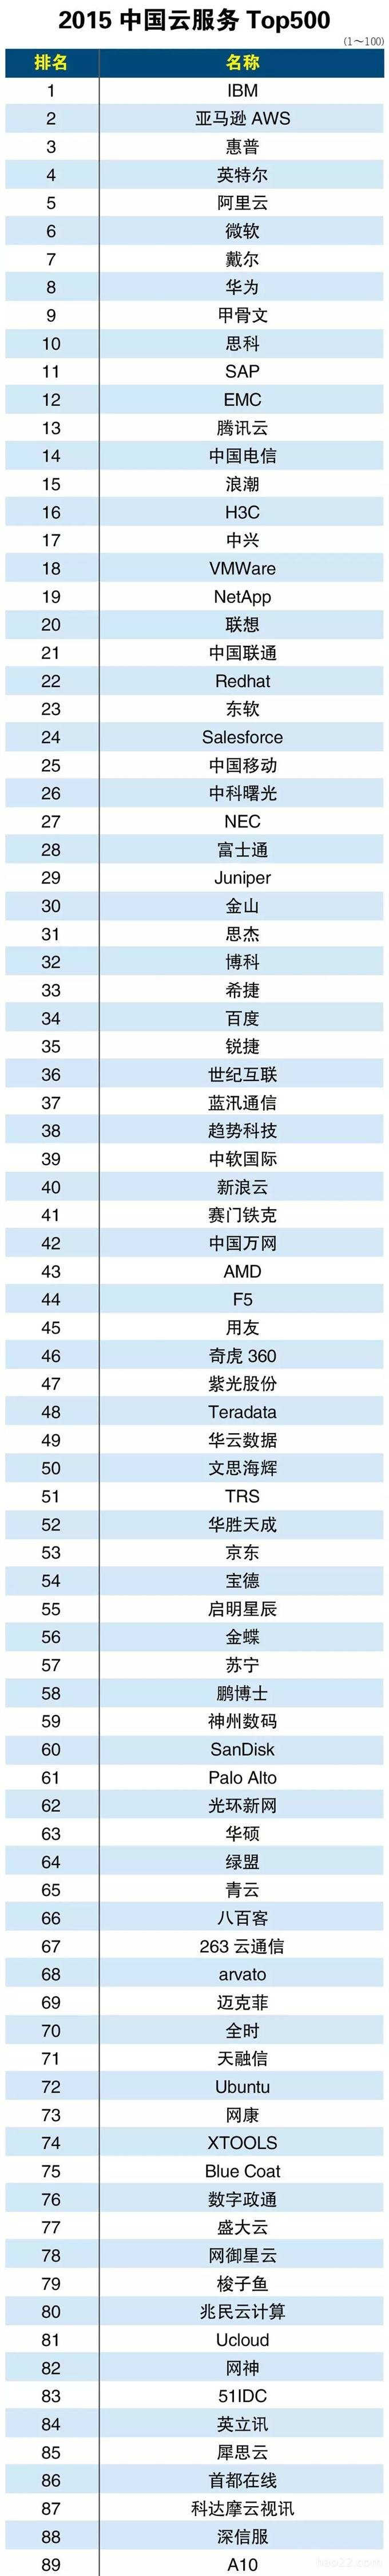 2015年中国云服务提供商排行榜Top500 